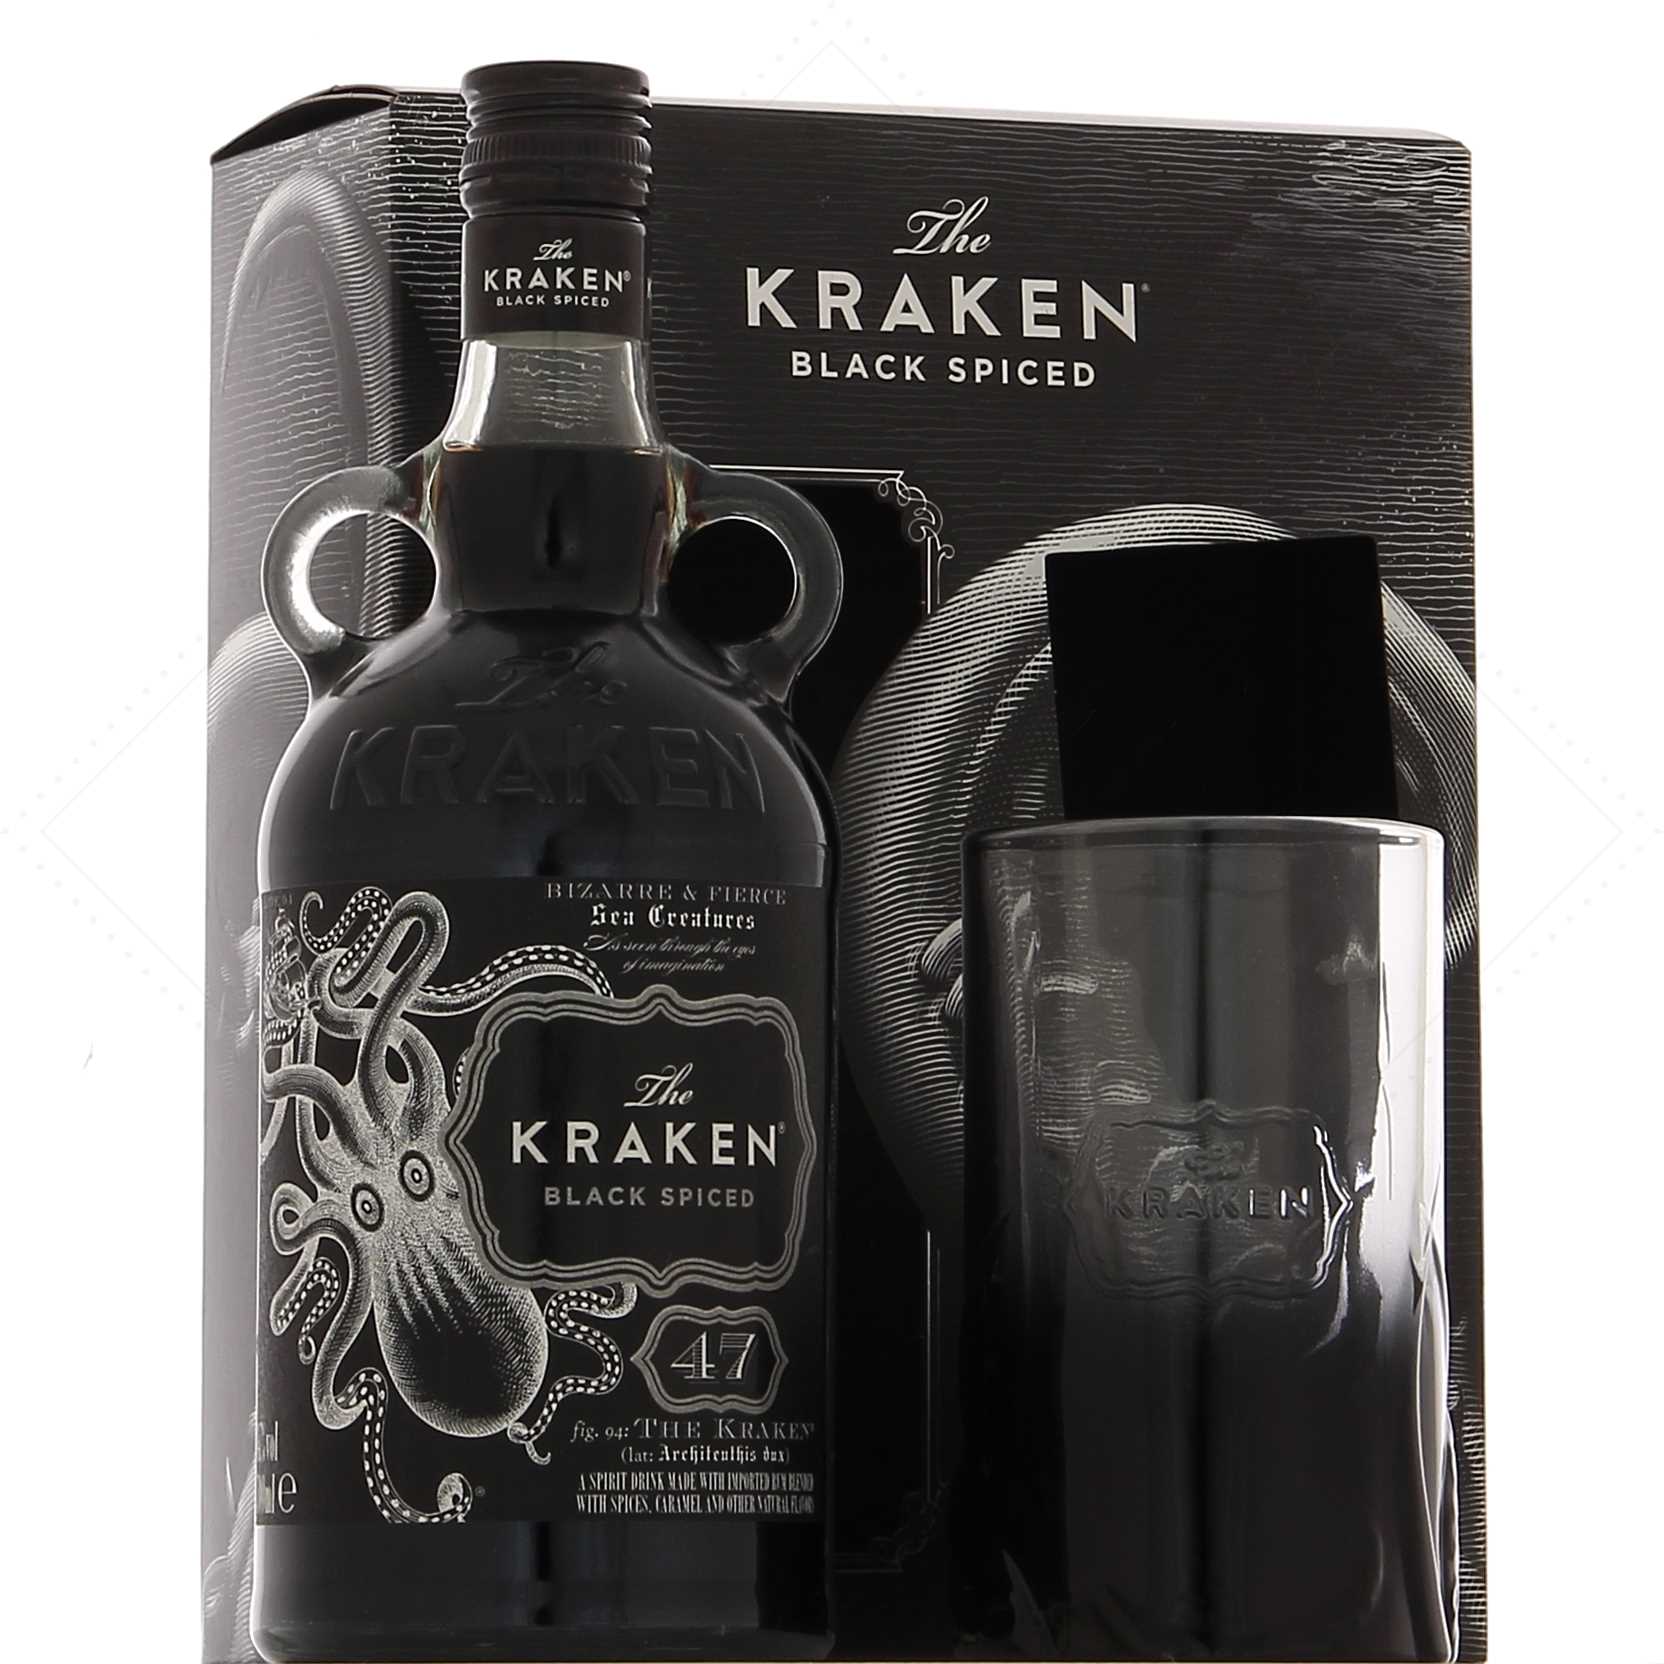 Achat de Rhum Kraken Black Spiced 47° Perfect Storm 70cl vendu en Coffret 1  verre sur notre site - Odyssee-vins